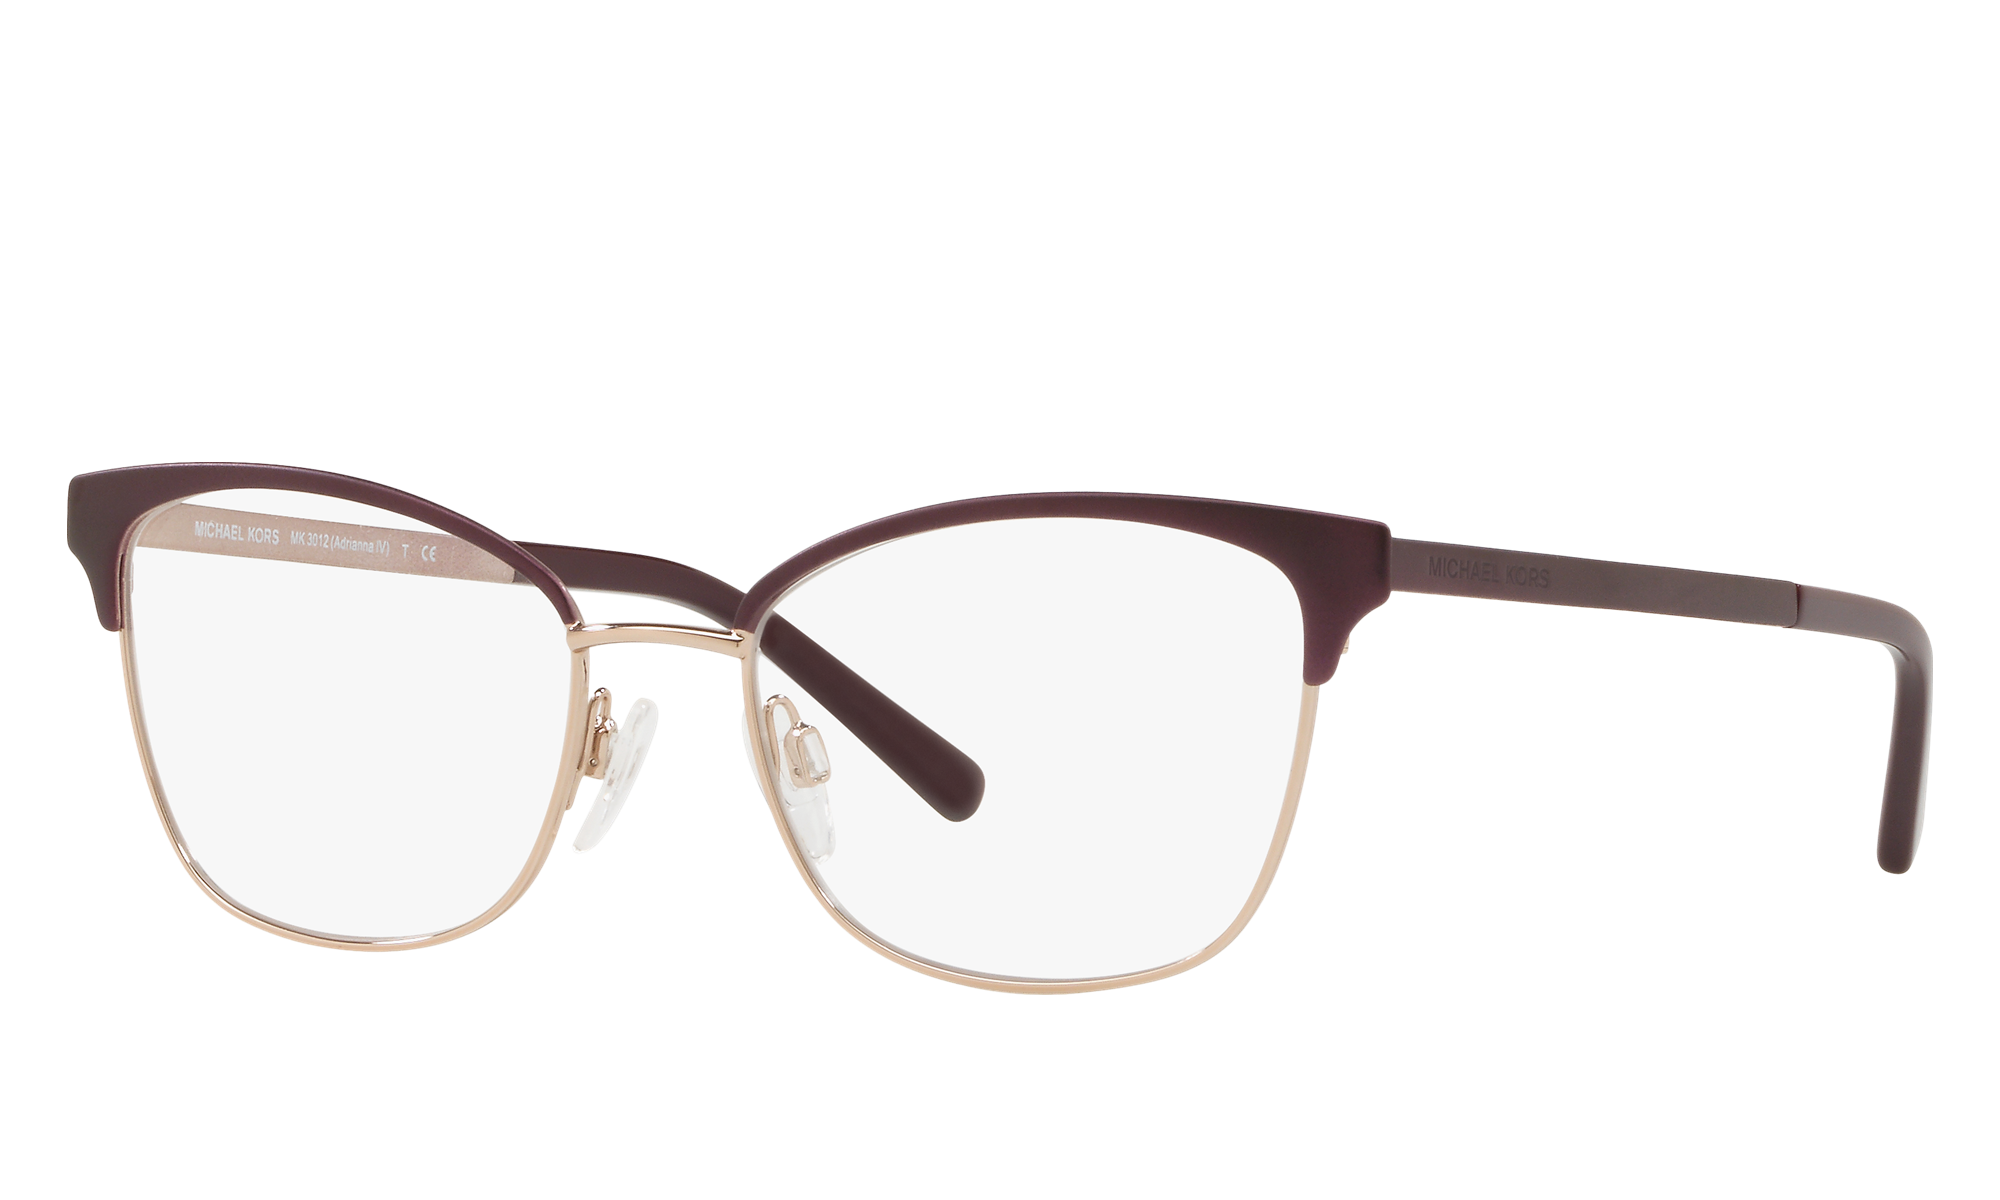 michael kors men's eyeglass frames